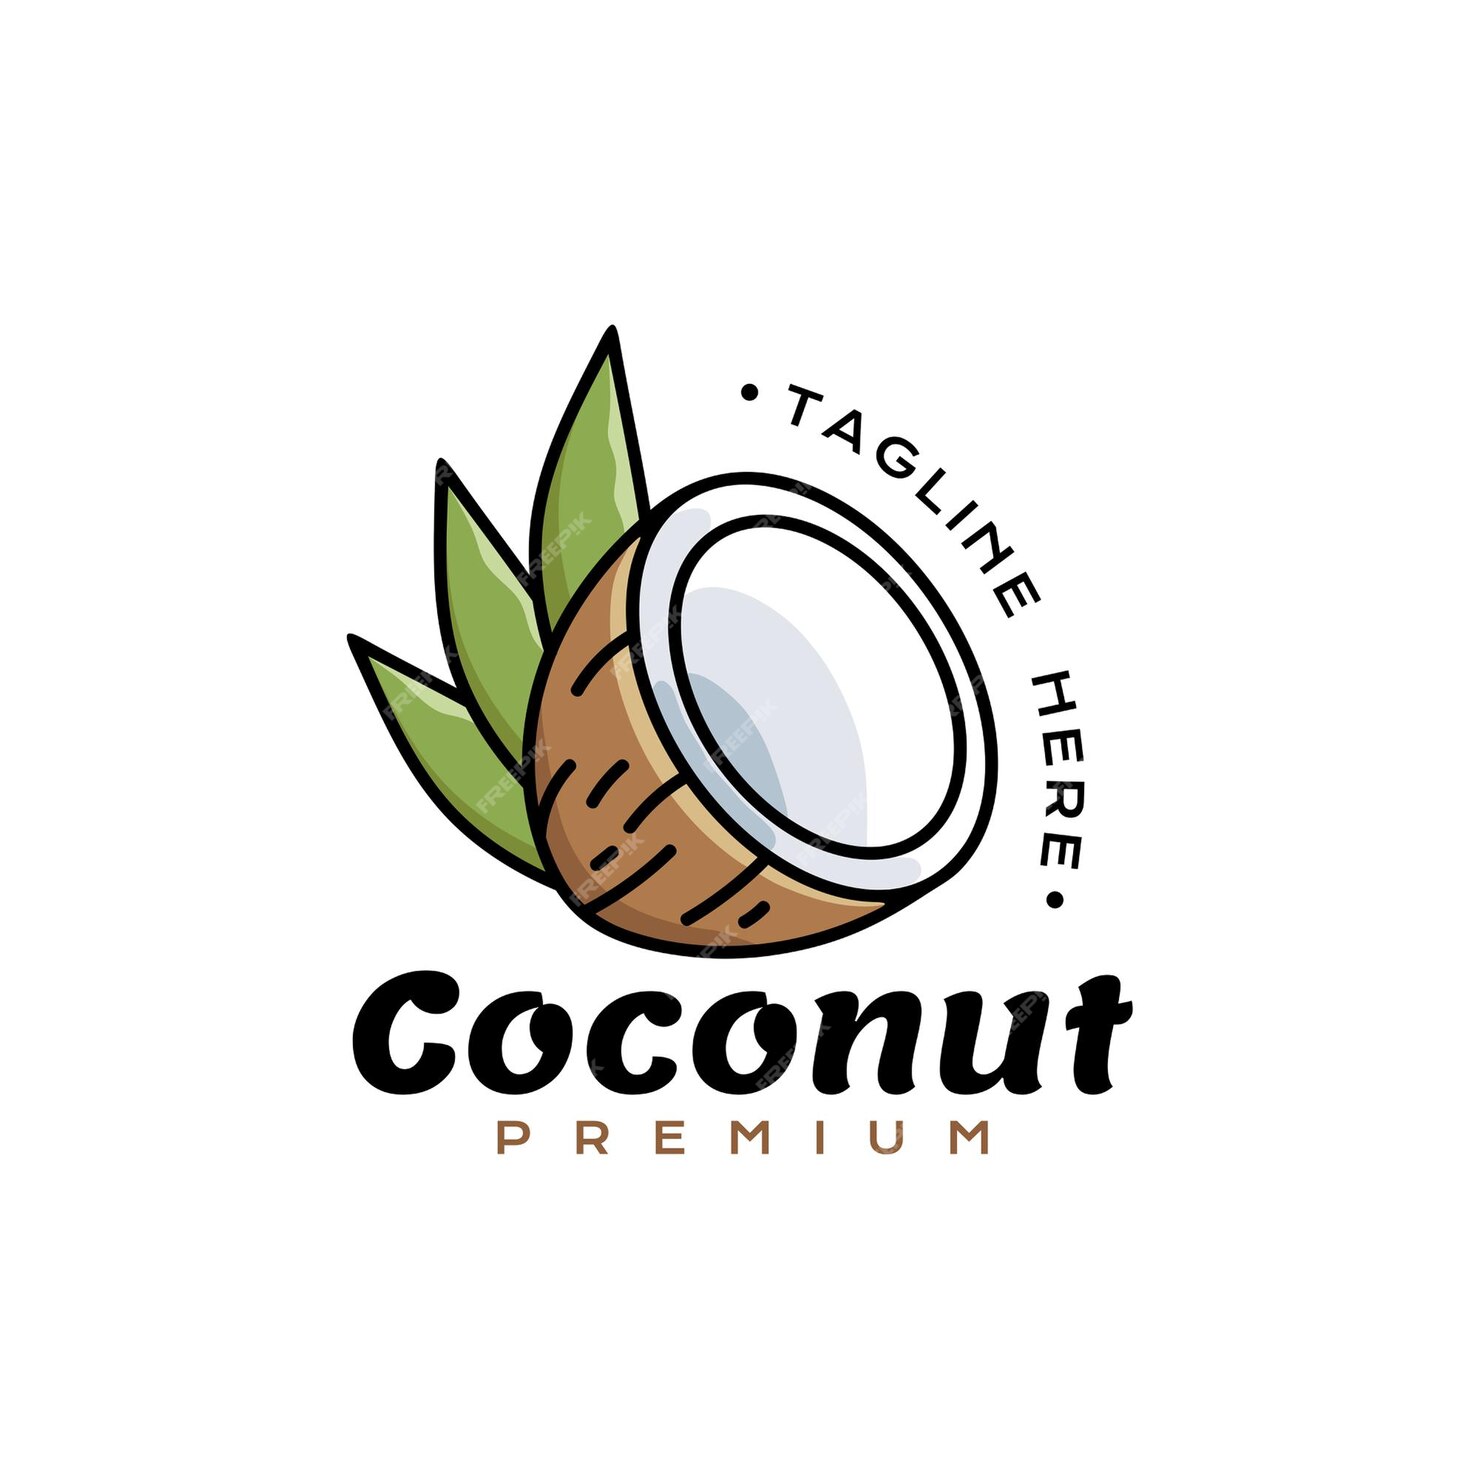 Premium Vector | Coconut icon logo premium split coconut